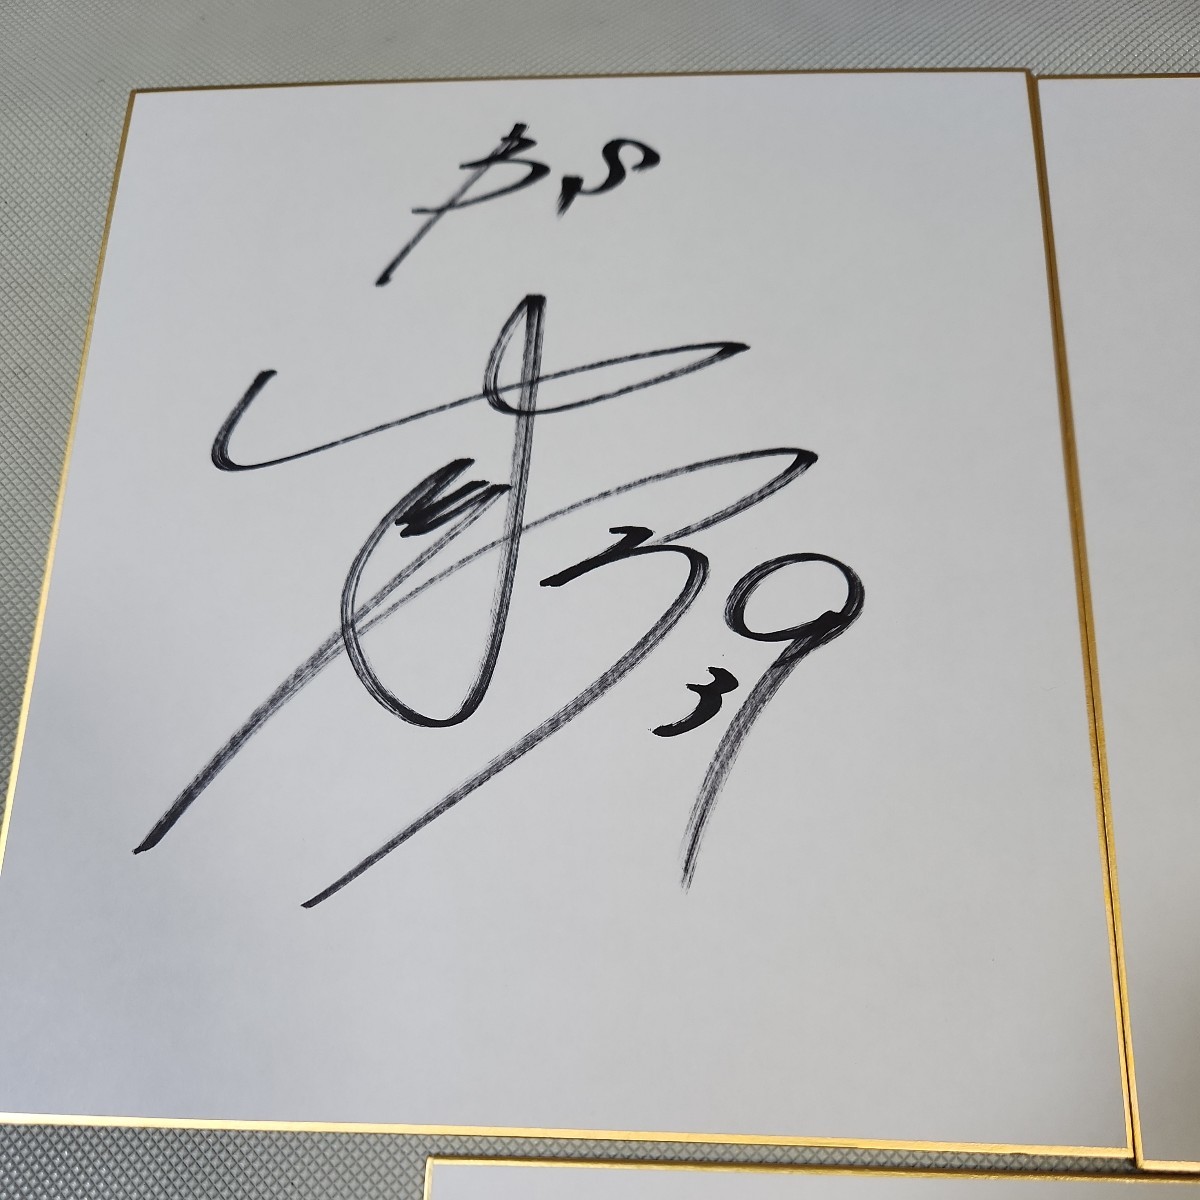  Orix Buffaloes autograph autograph square fancy cardboard 3 pieces set 